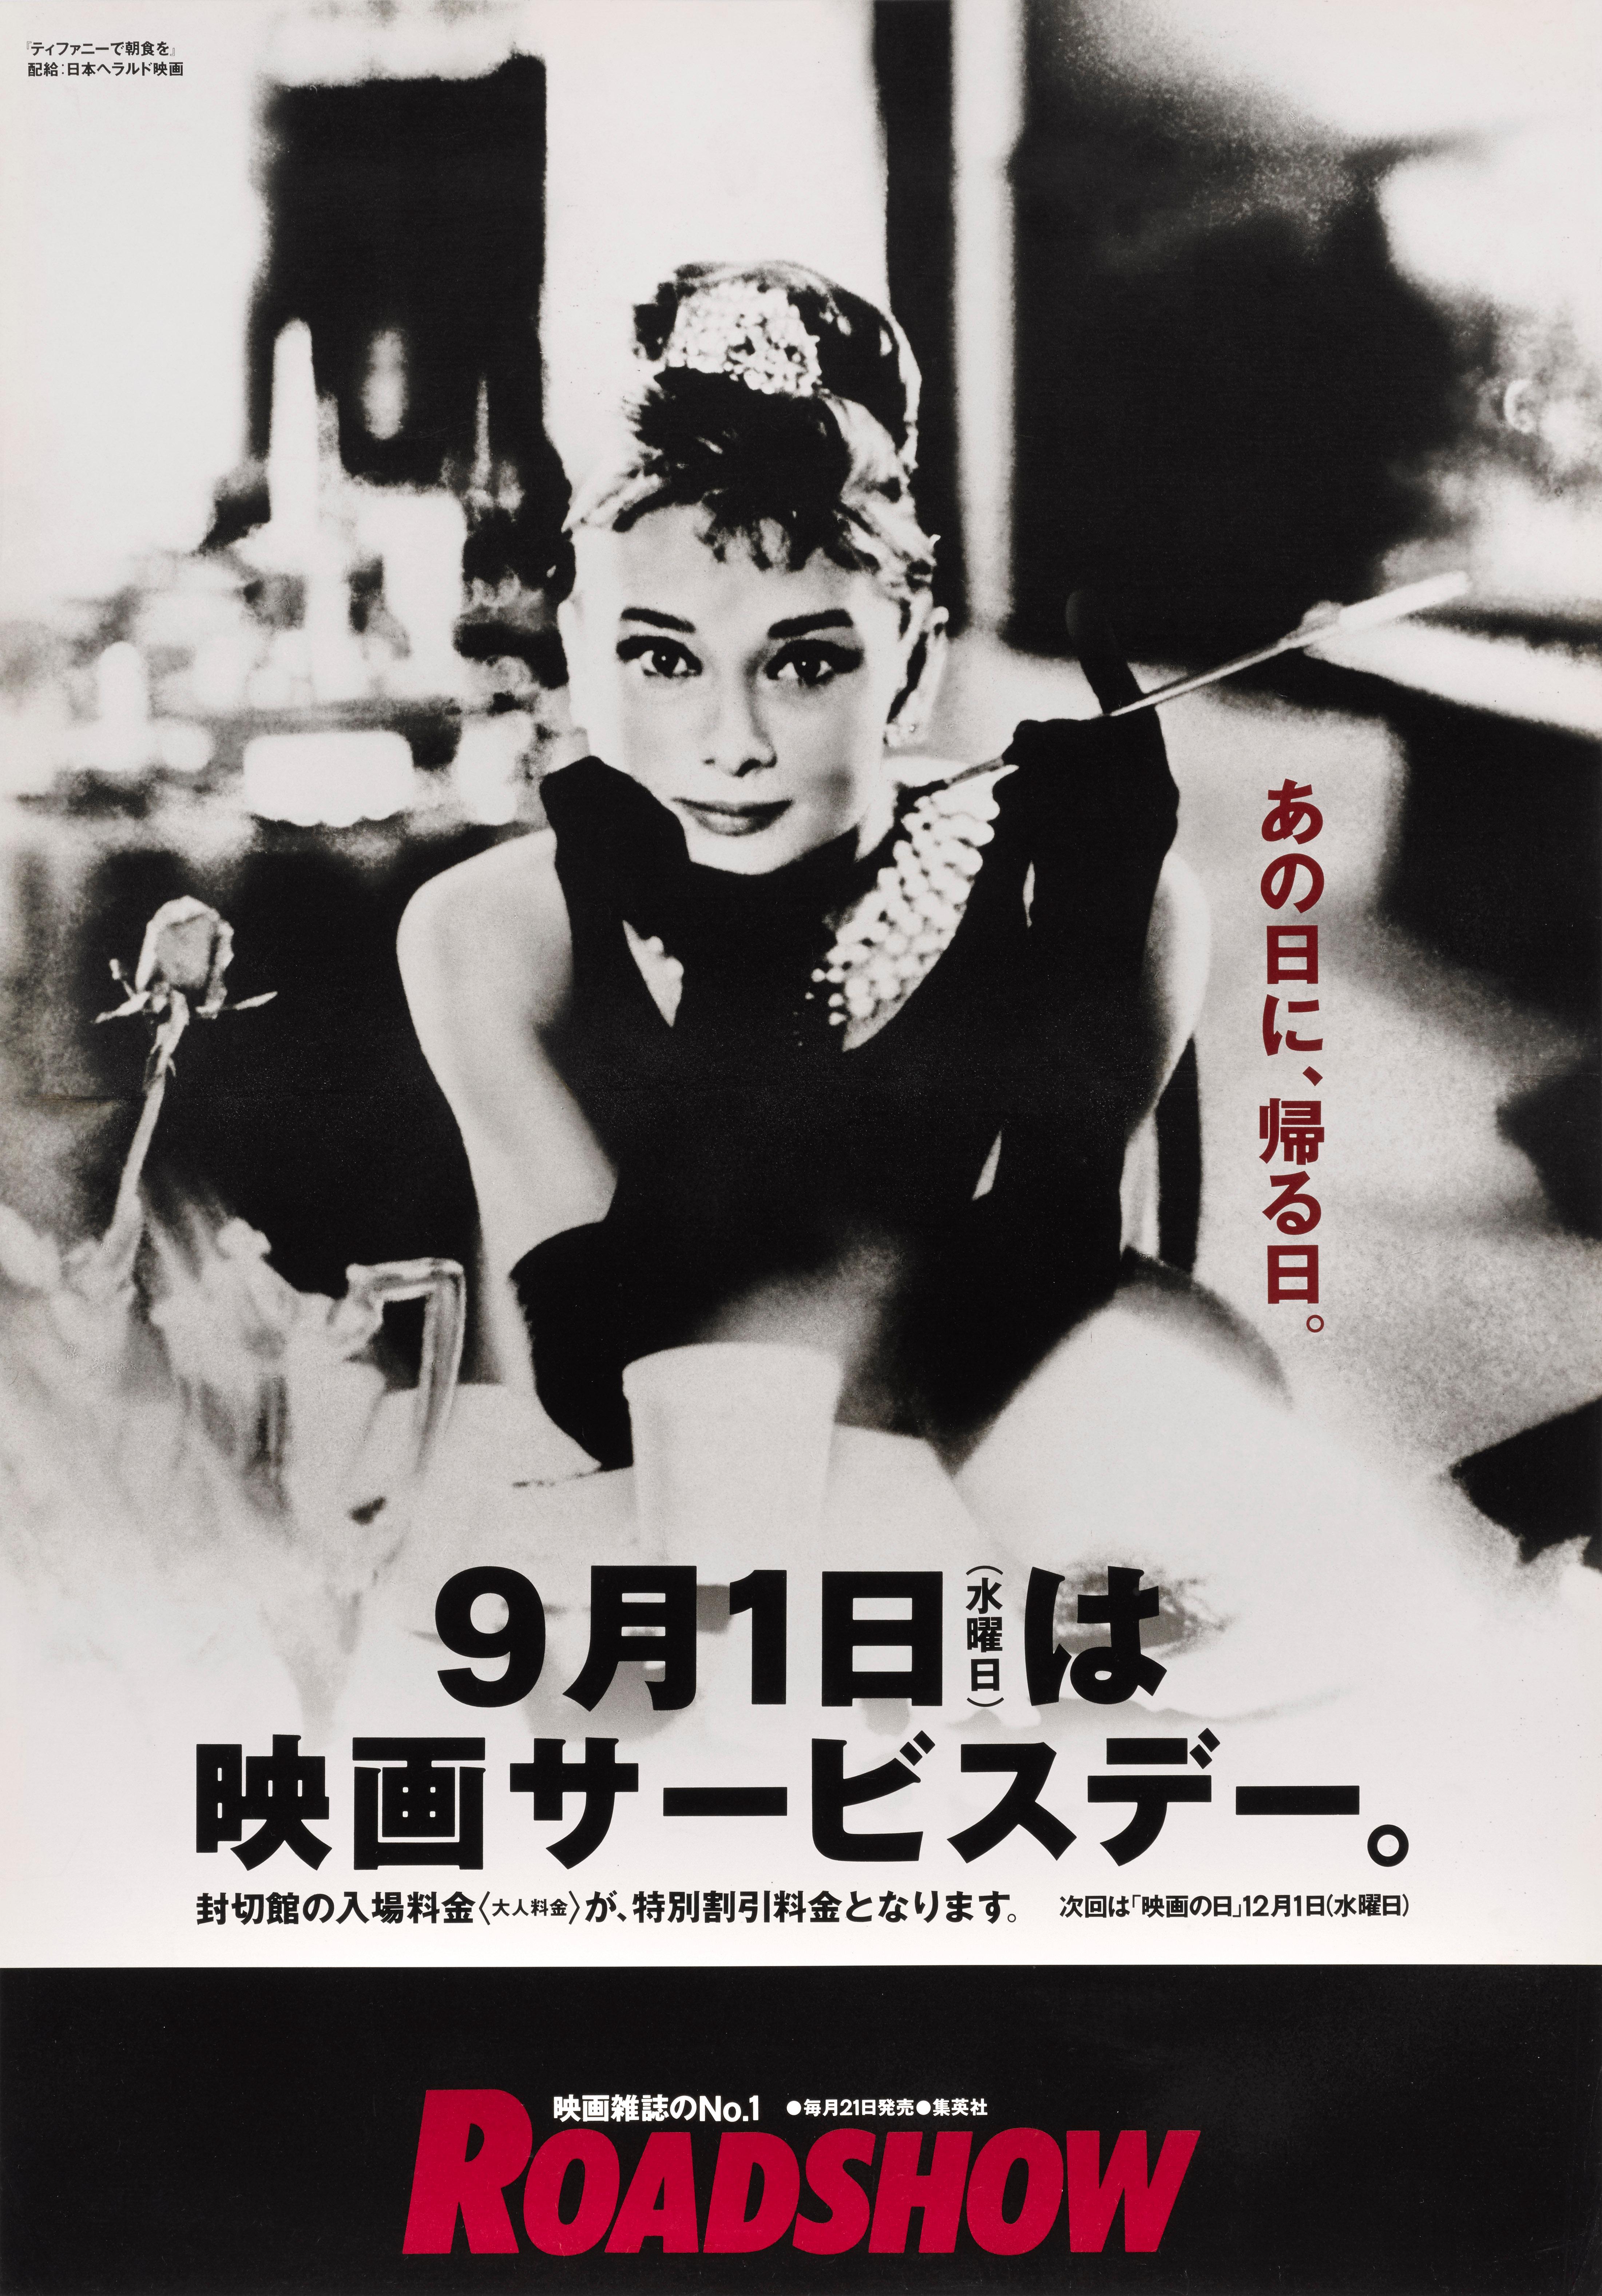 Originales japanisches Filmplakat für Audrey Hepburns Filmklassiker von 1961 unter der Regie von Blake Edwards und mit George Peppard und Audrey Hepburn in den Hauptrollen. Dieses Plakat wurde für die Wiederveröffentlichung des Films in Japan im